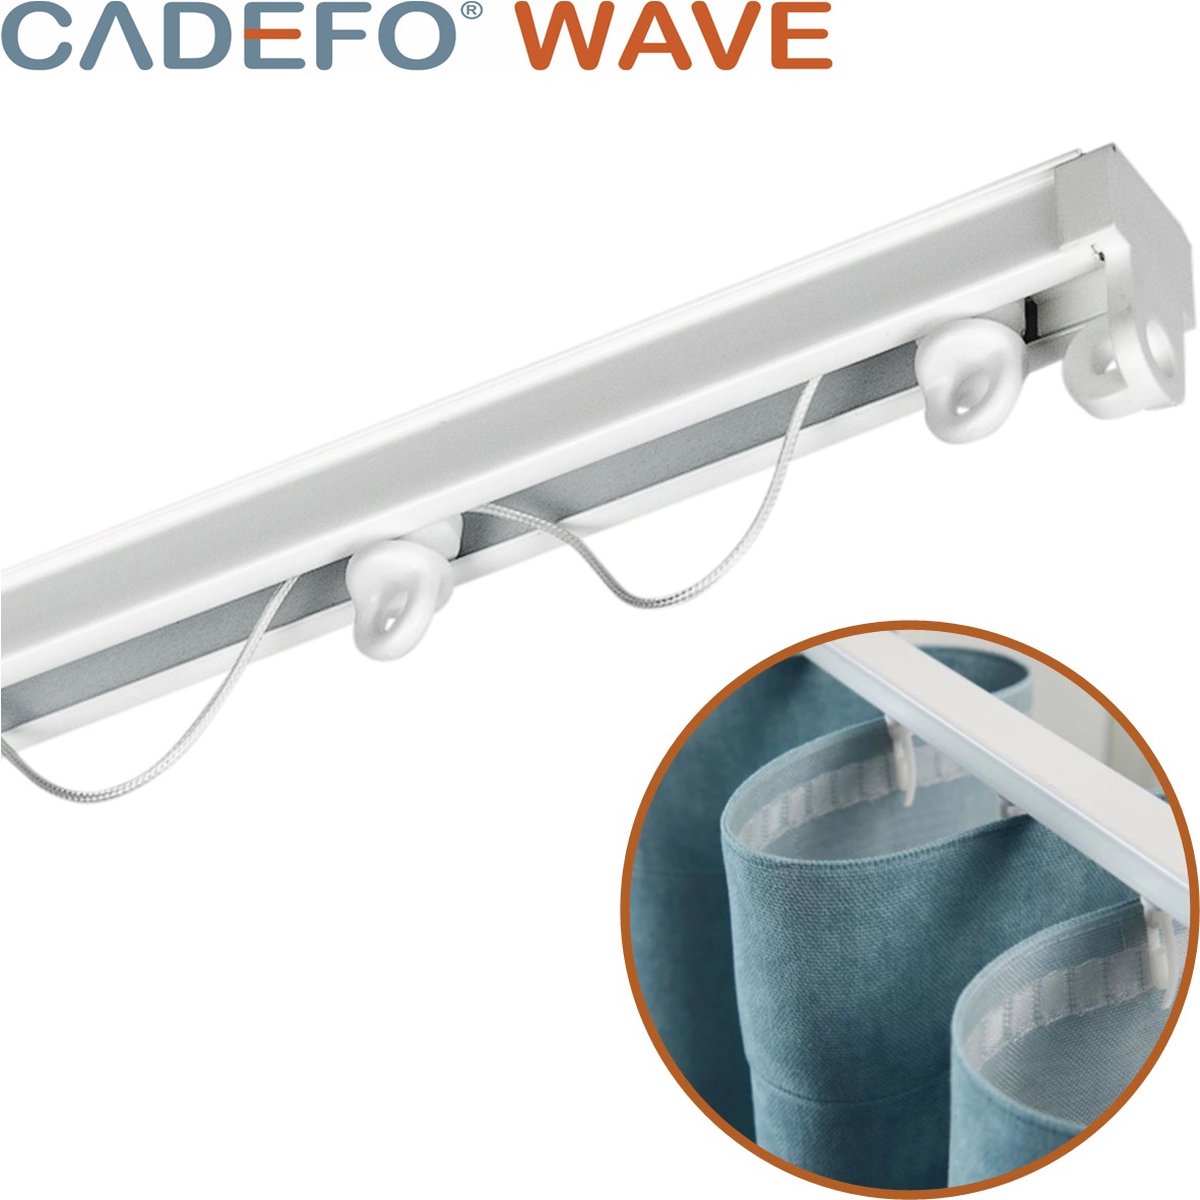 CADEFO WAVE (151 - 200 cm) Gordijnrails - Compleet op maat! - UIT 1 STUK - Leverbaar tot 6 meter - Plafondbevestiging - Lengte 185 cm